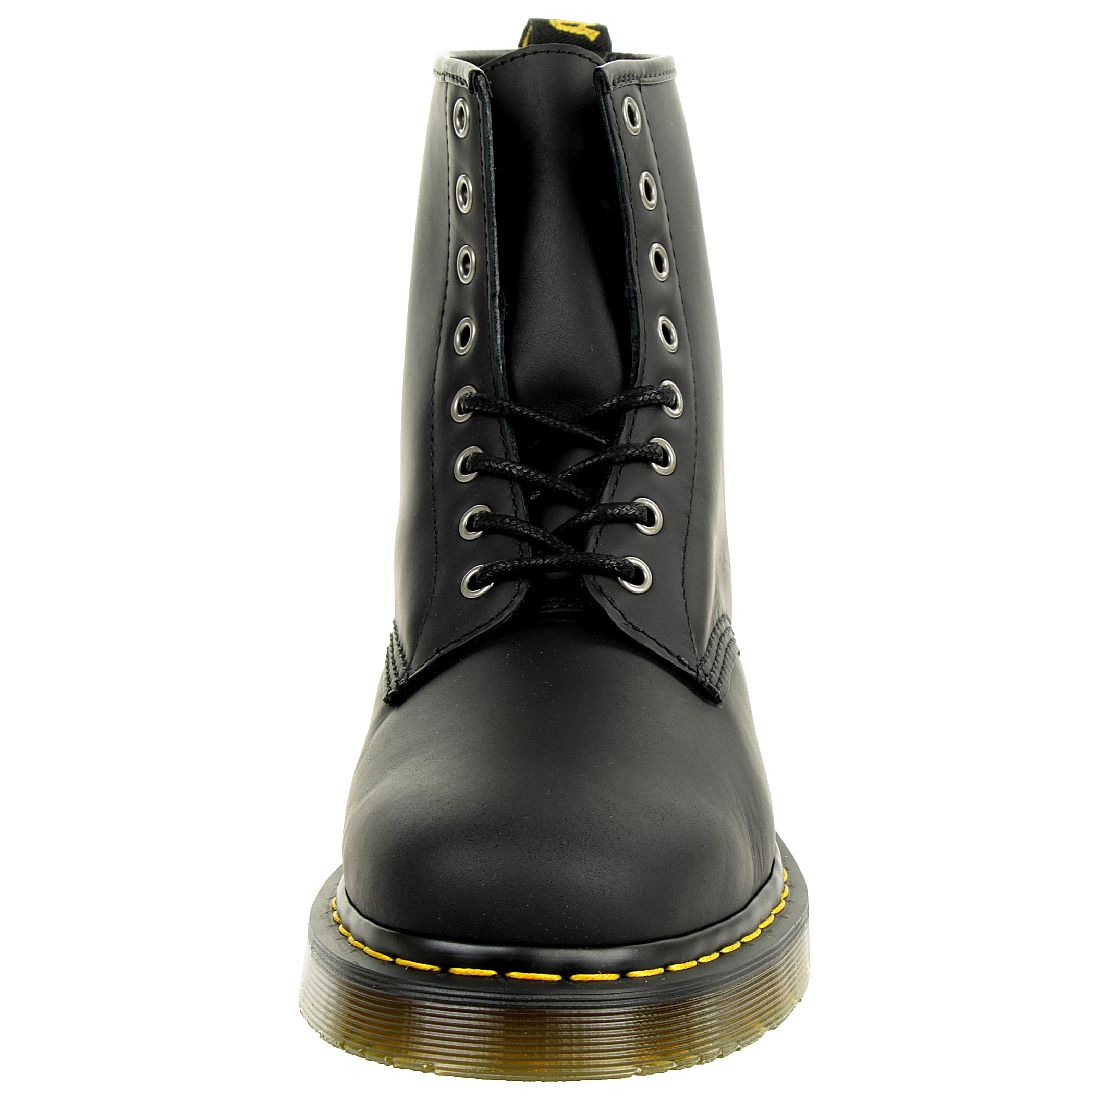 Dr. Martens 1460 Snowplow Black Unisex Stiefel Boots schwarz 24039001